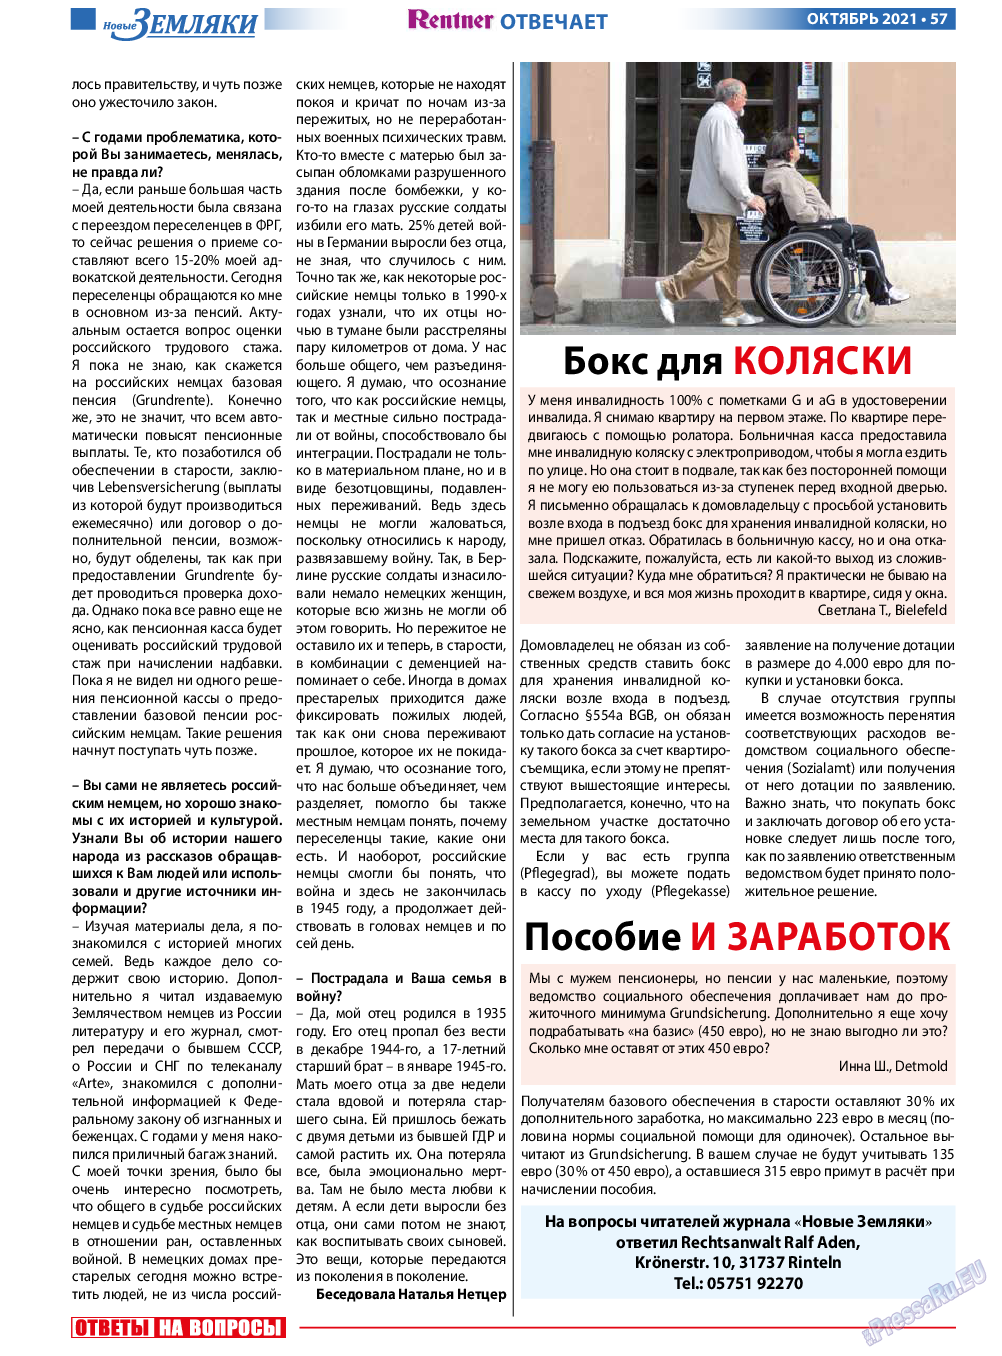 Новые Земляки, газета. 2021 №10 стр.57